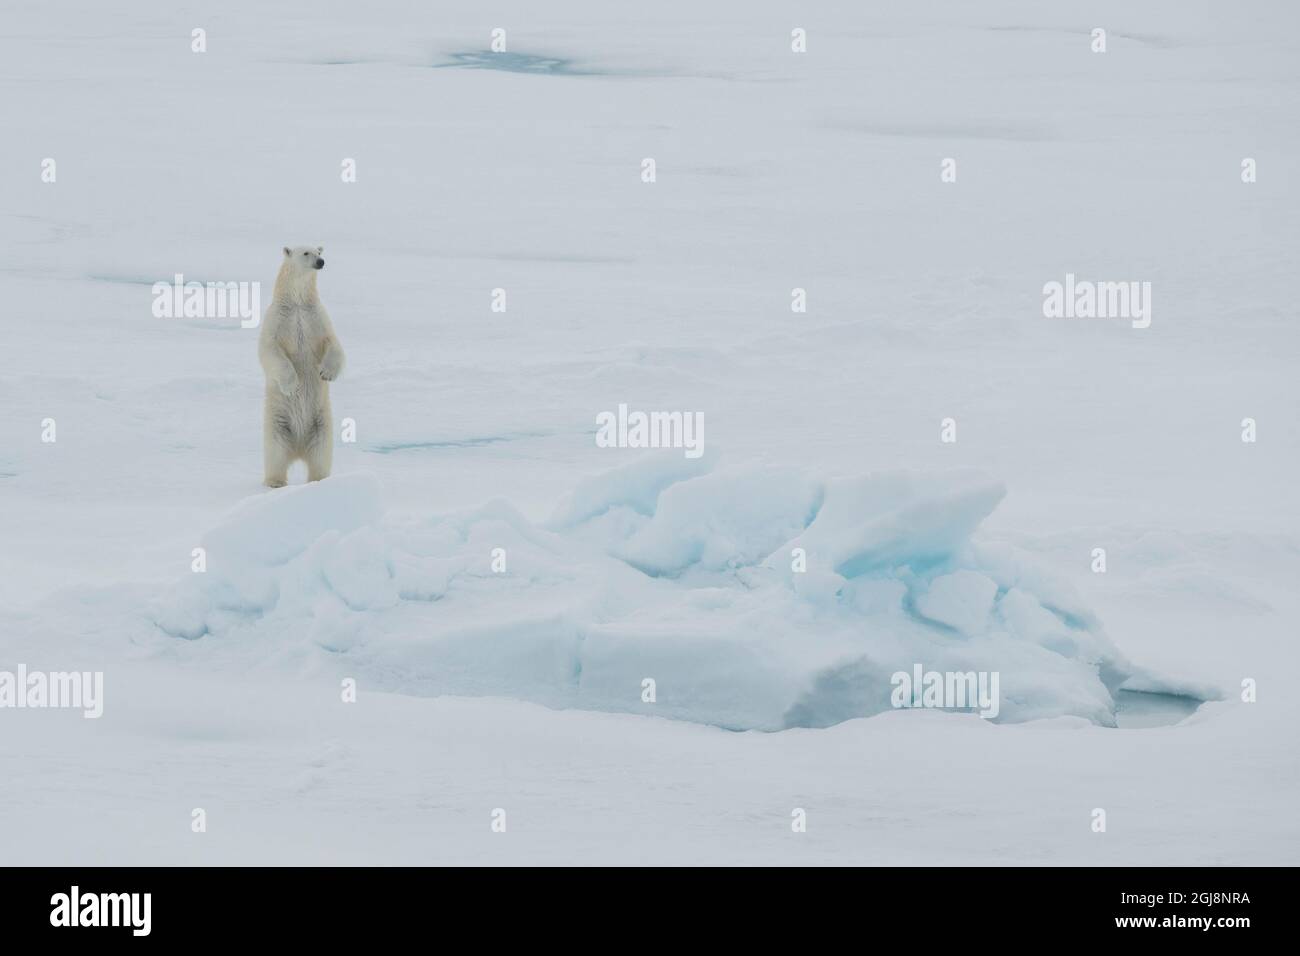 La Russia, alta artico. Orso polare a 84.53 gradi nord. Foto Stock